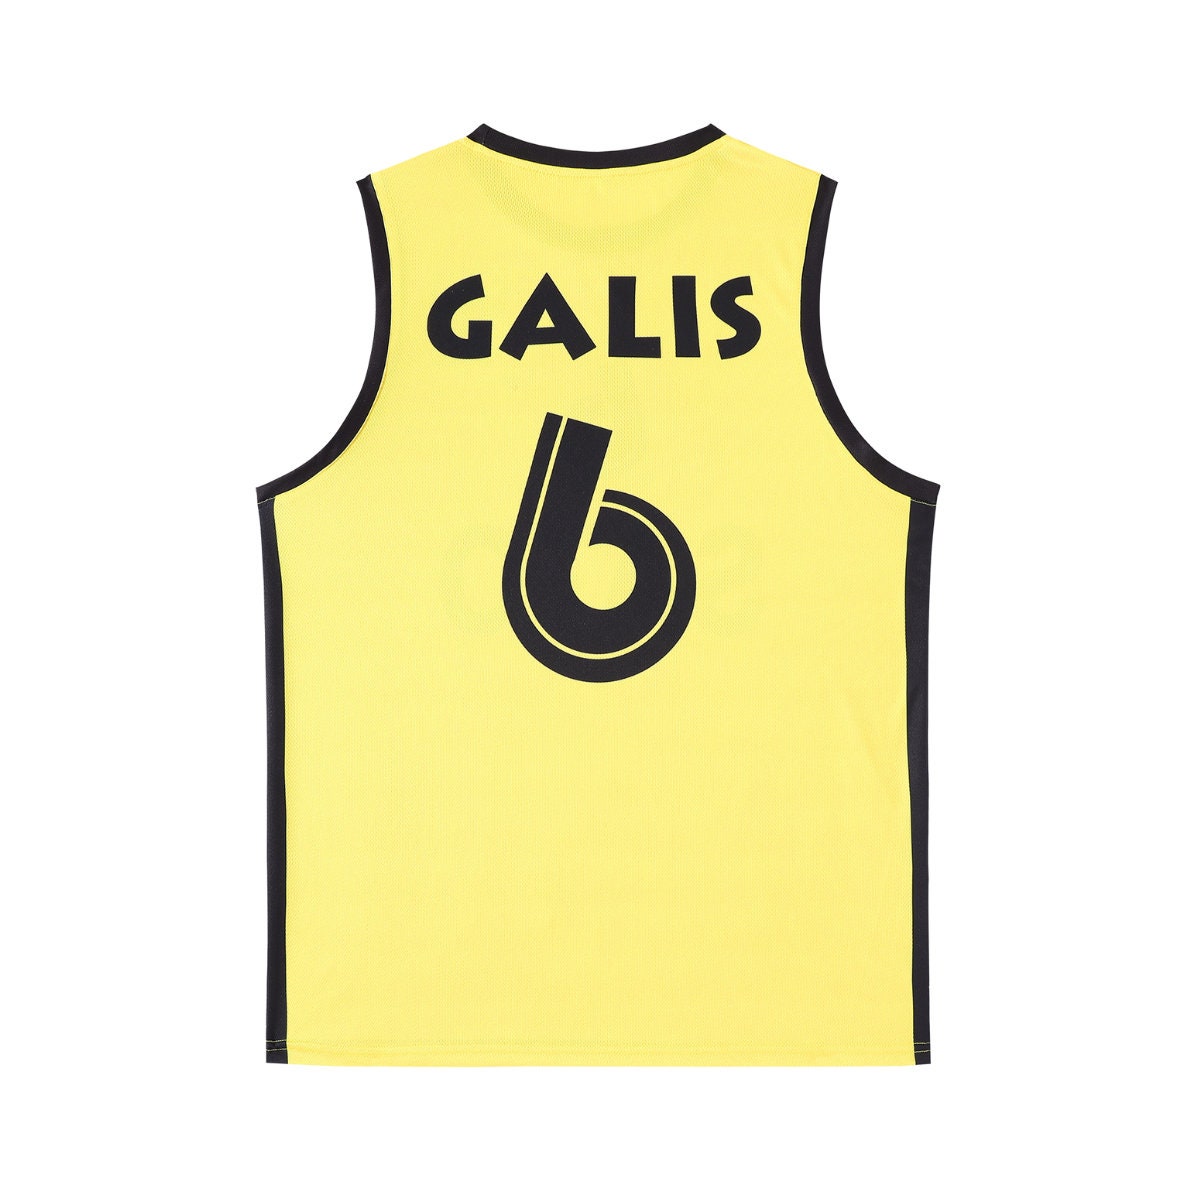 Nick Galis Aris Thessaloniki Greece Basketball Jersey Retro